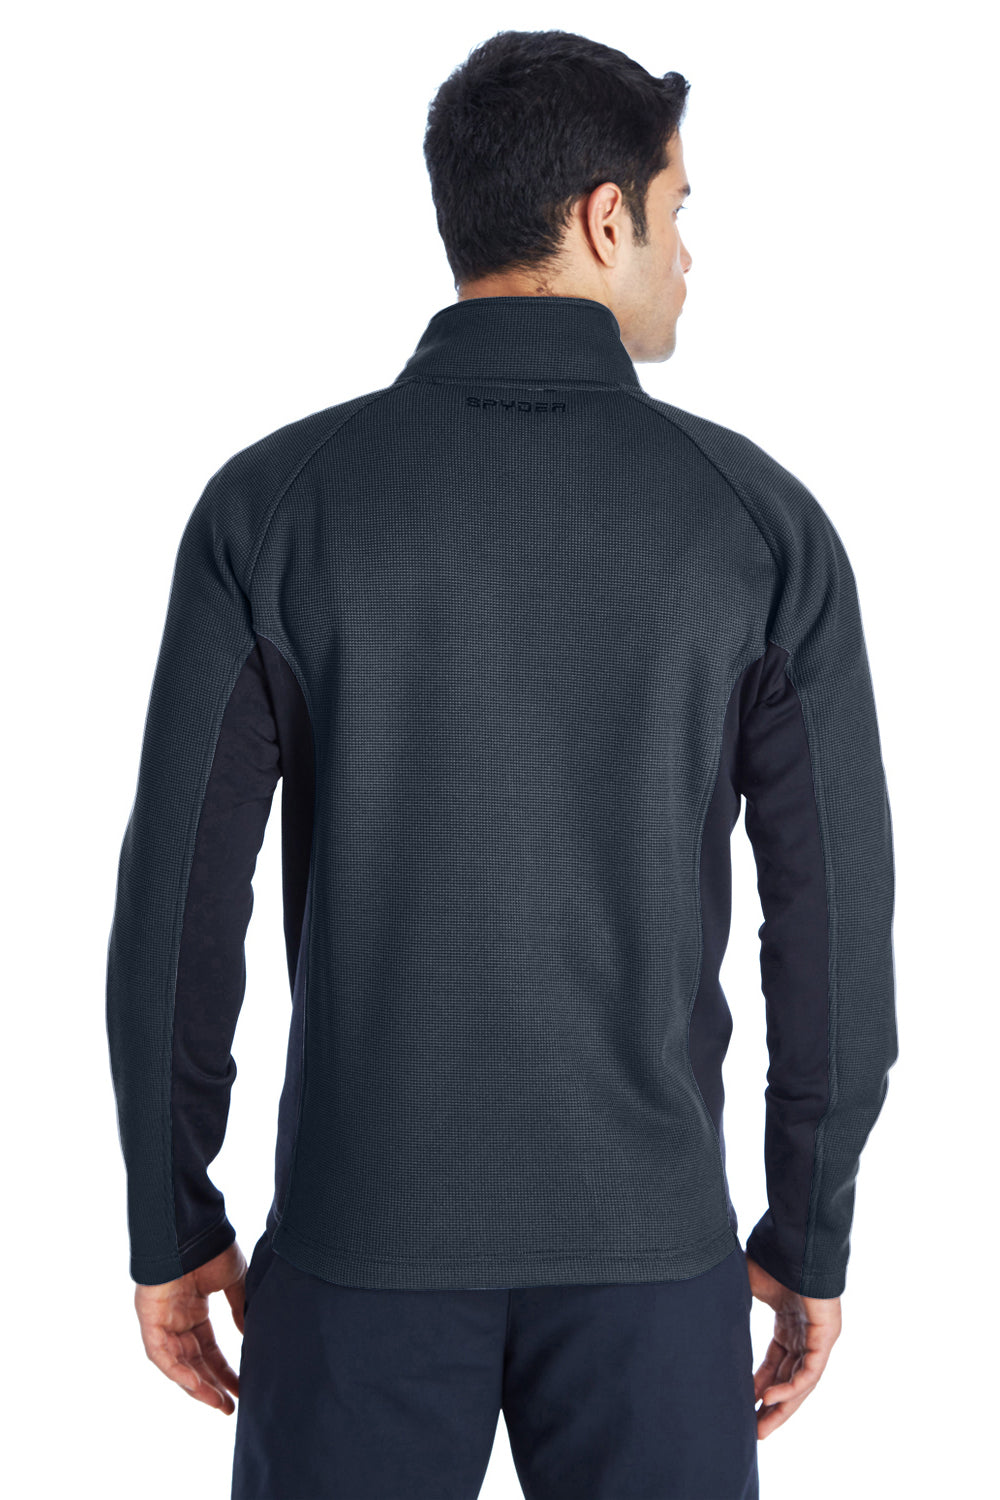 Spyder 187330 Mens Constant Full Zip Sweater Fleece Jacket Frontier Blue Back